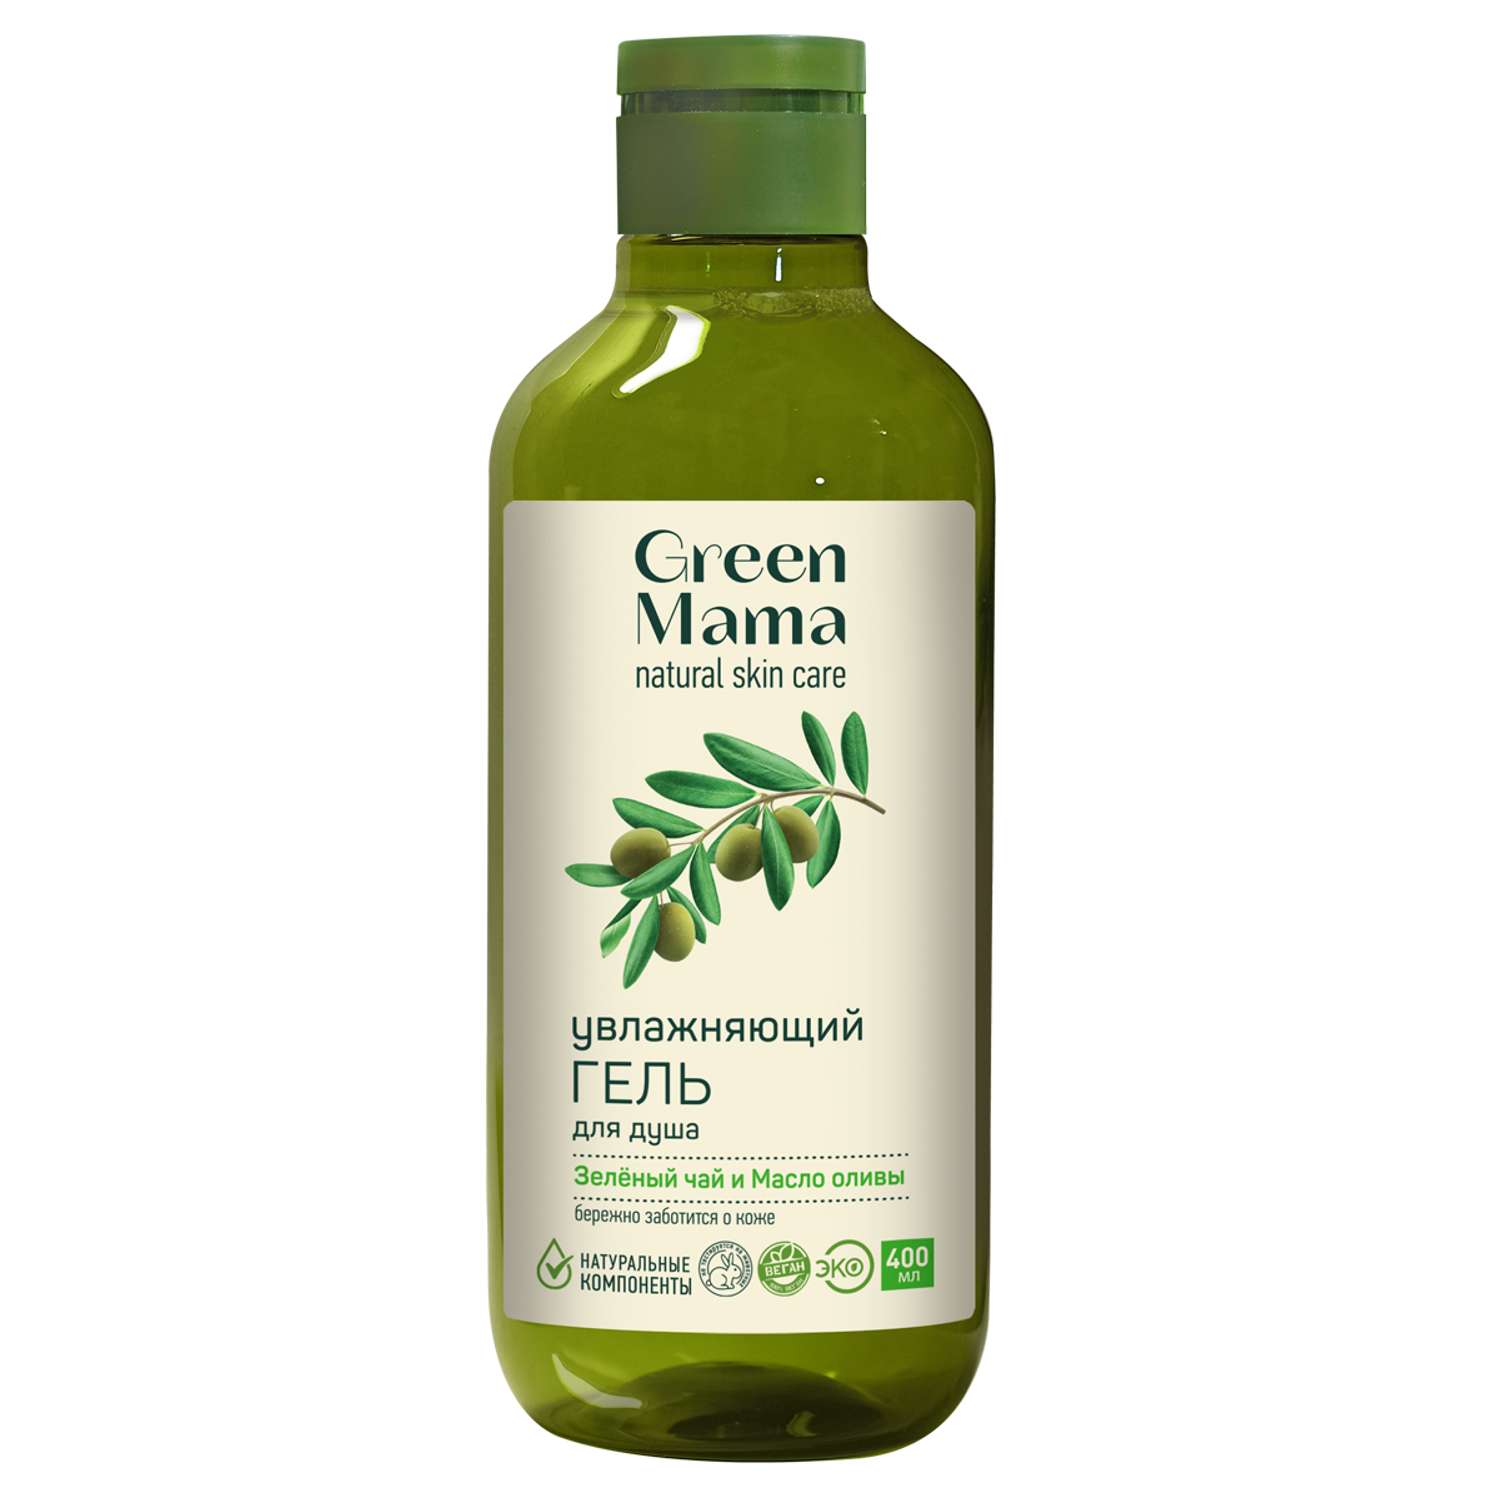 Гель Green Mama для душа увлажняющий зеленый чай и масло оливы 400 мл - фото 1